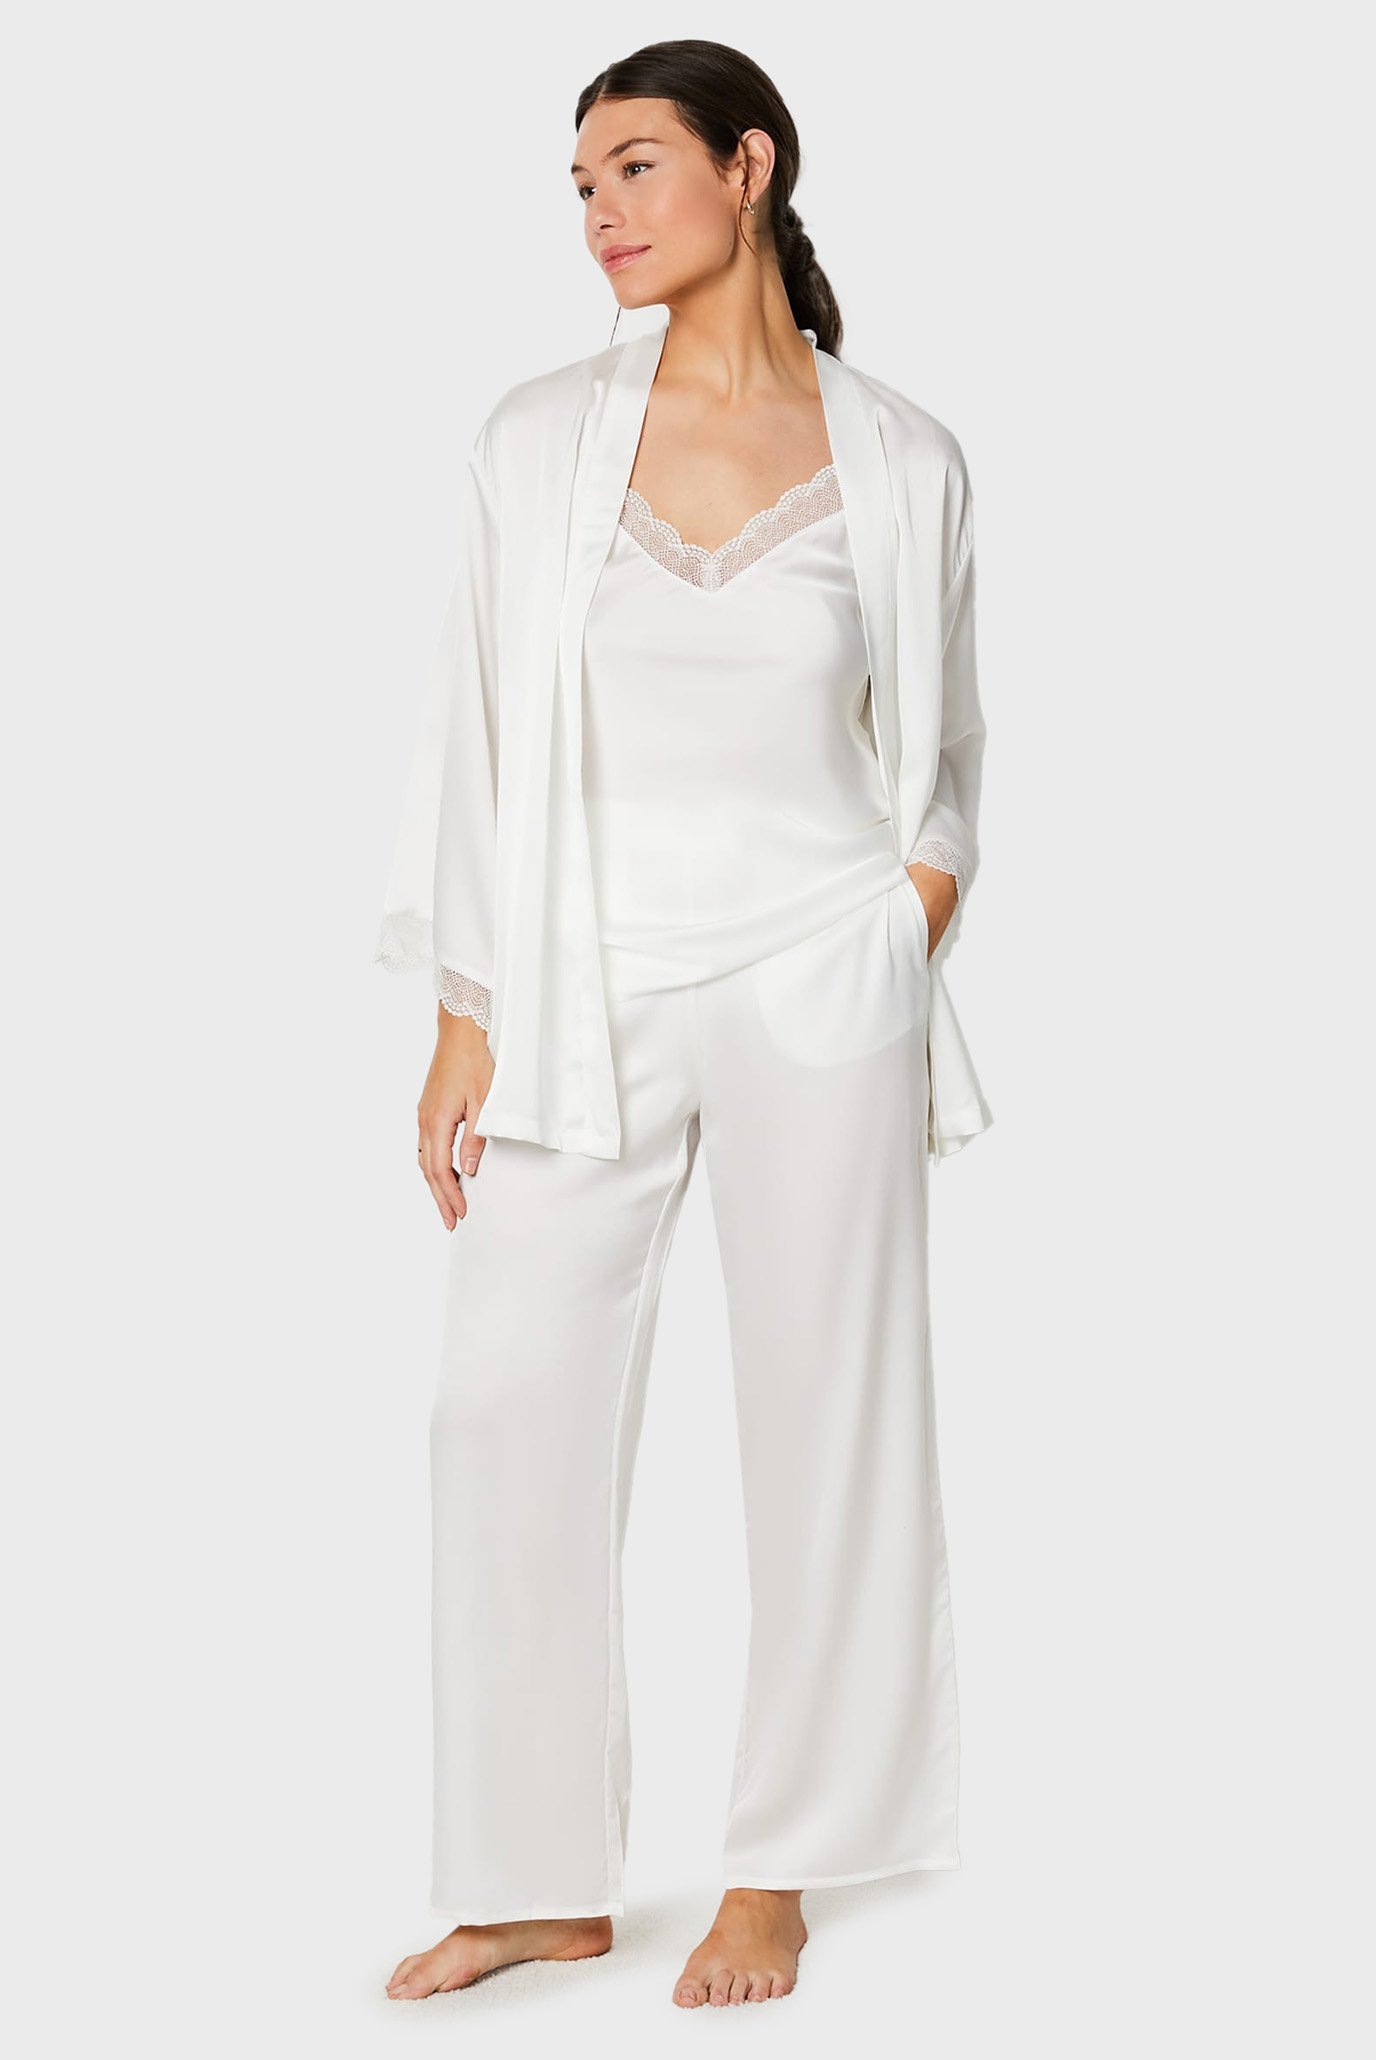 Женская белая пижама (кардиган, топ, брюки) TREASURE 1